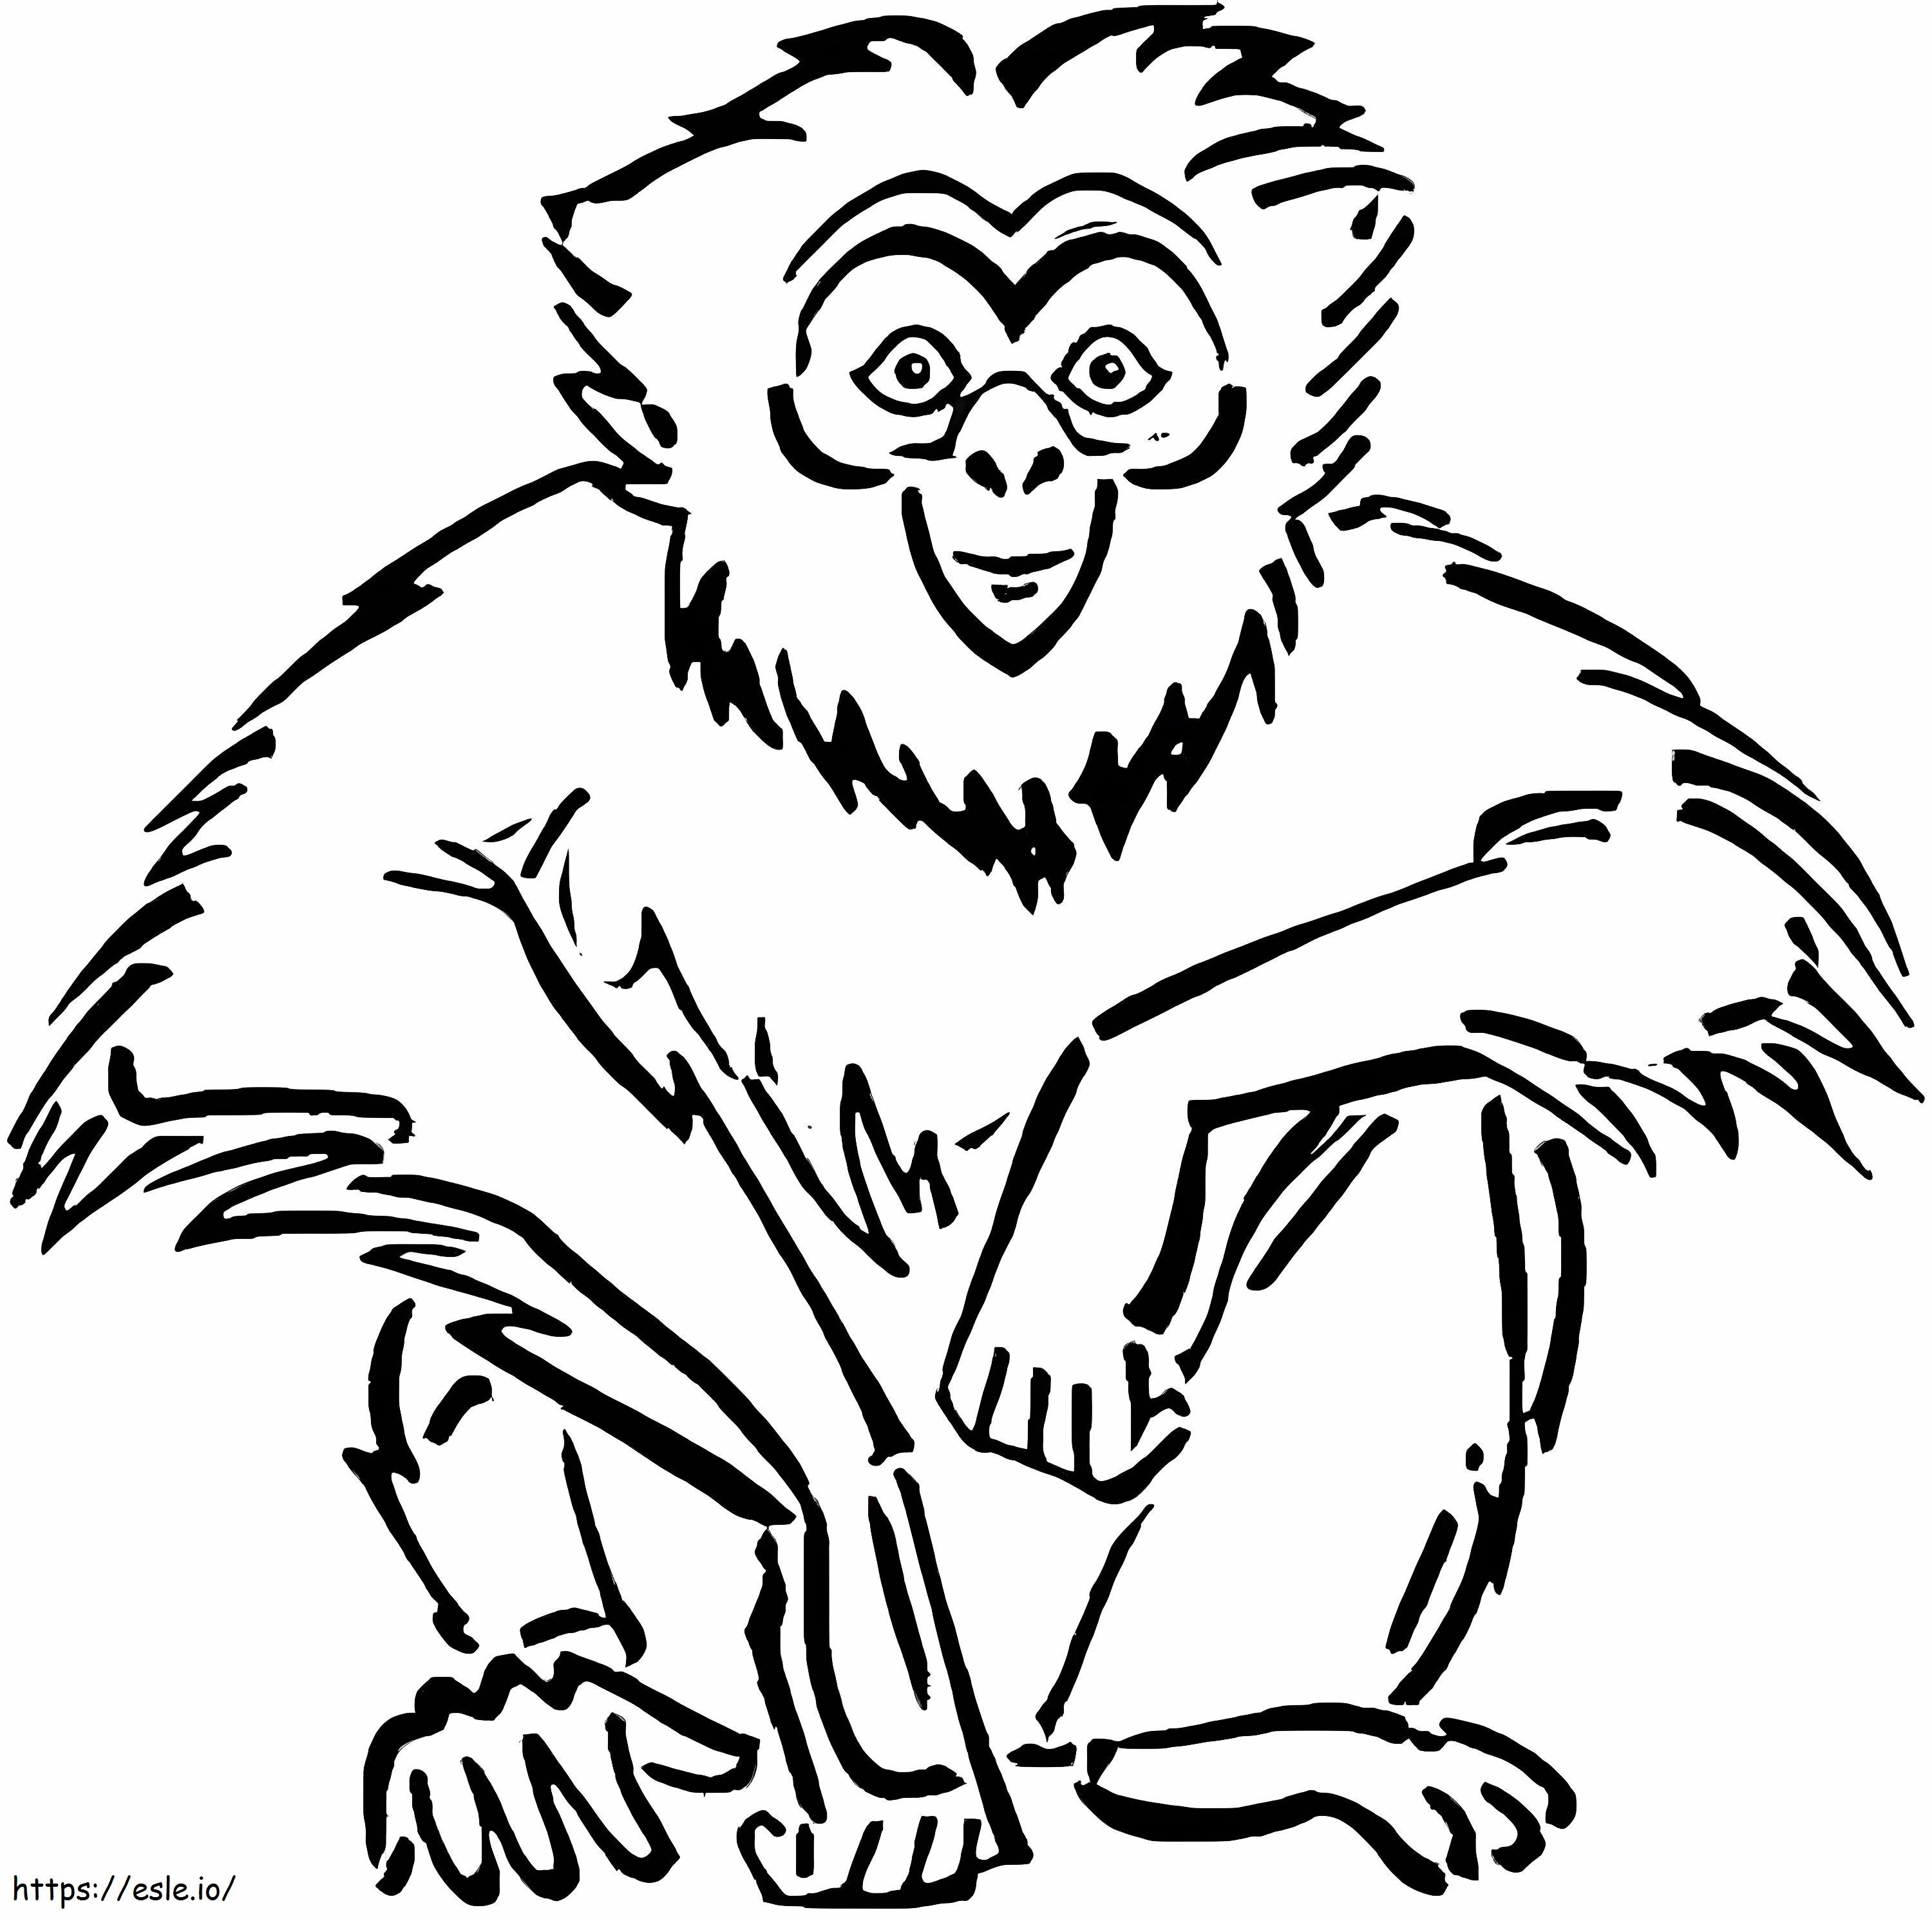 Affen zeichnen ausmalbilder